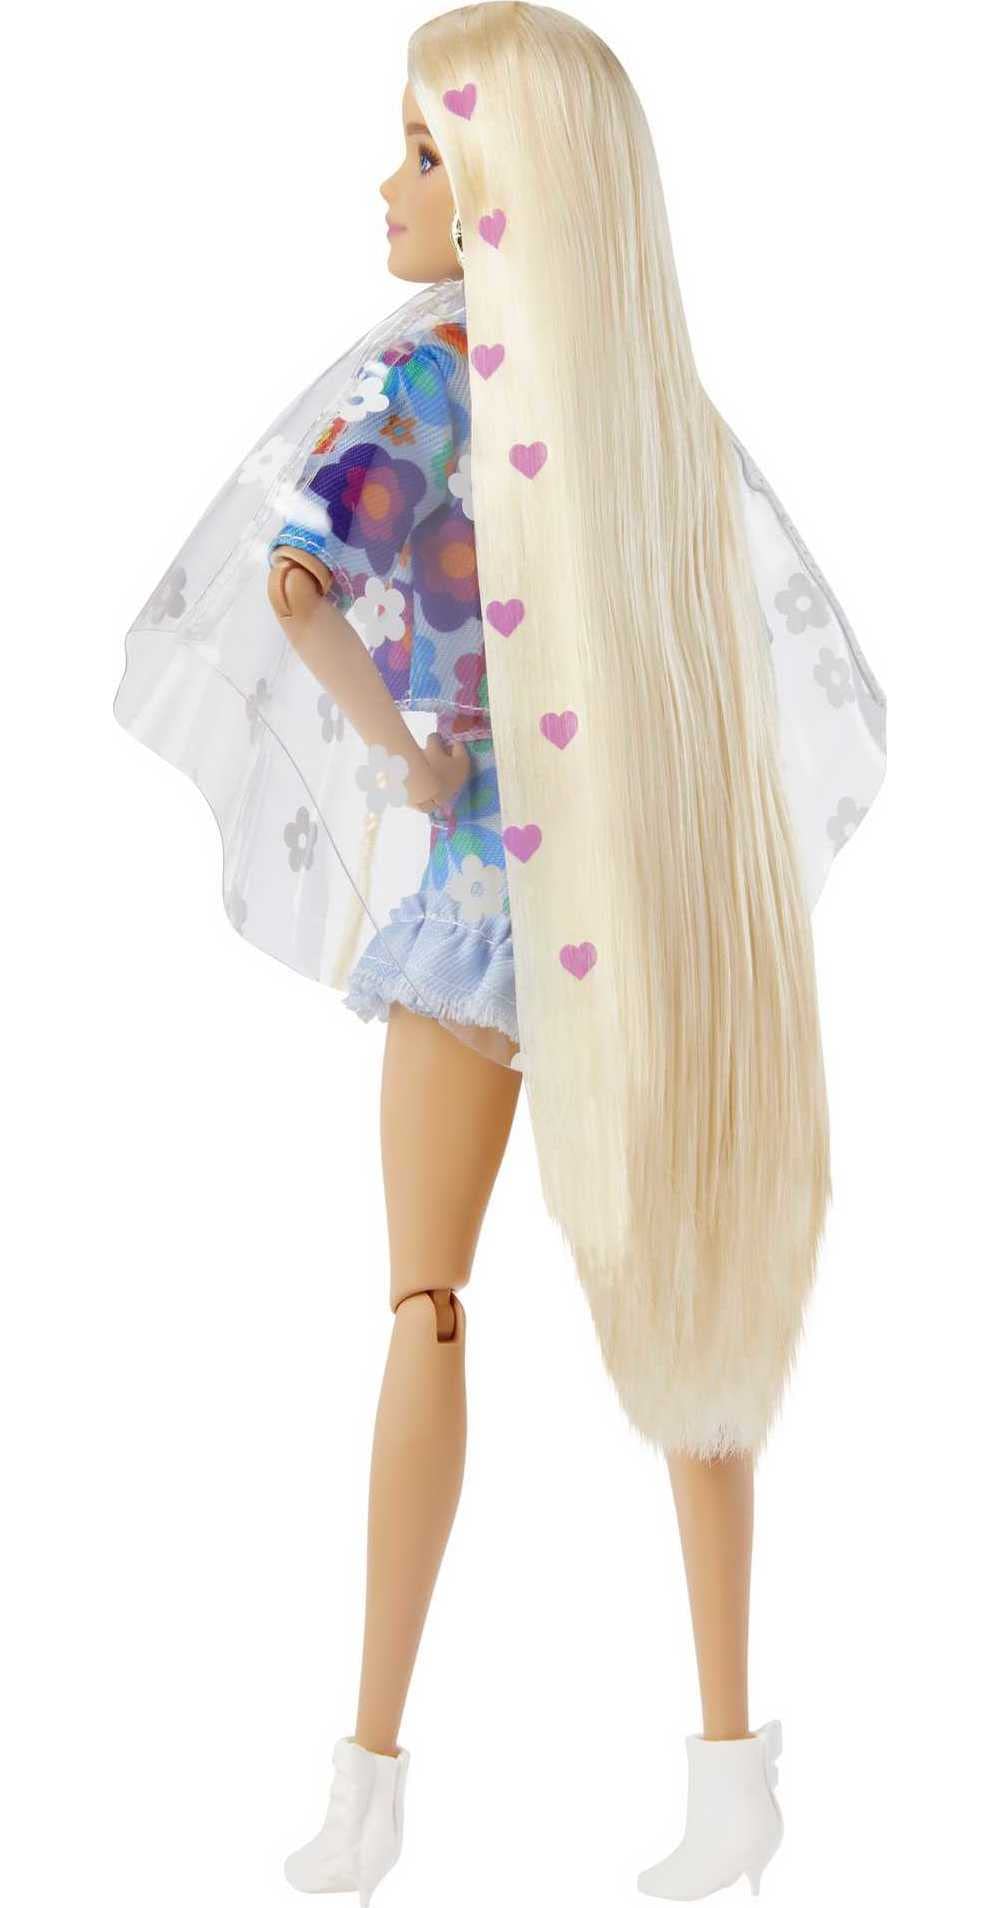 Barbie Muñeca extra